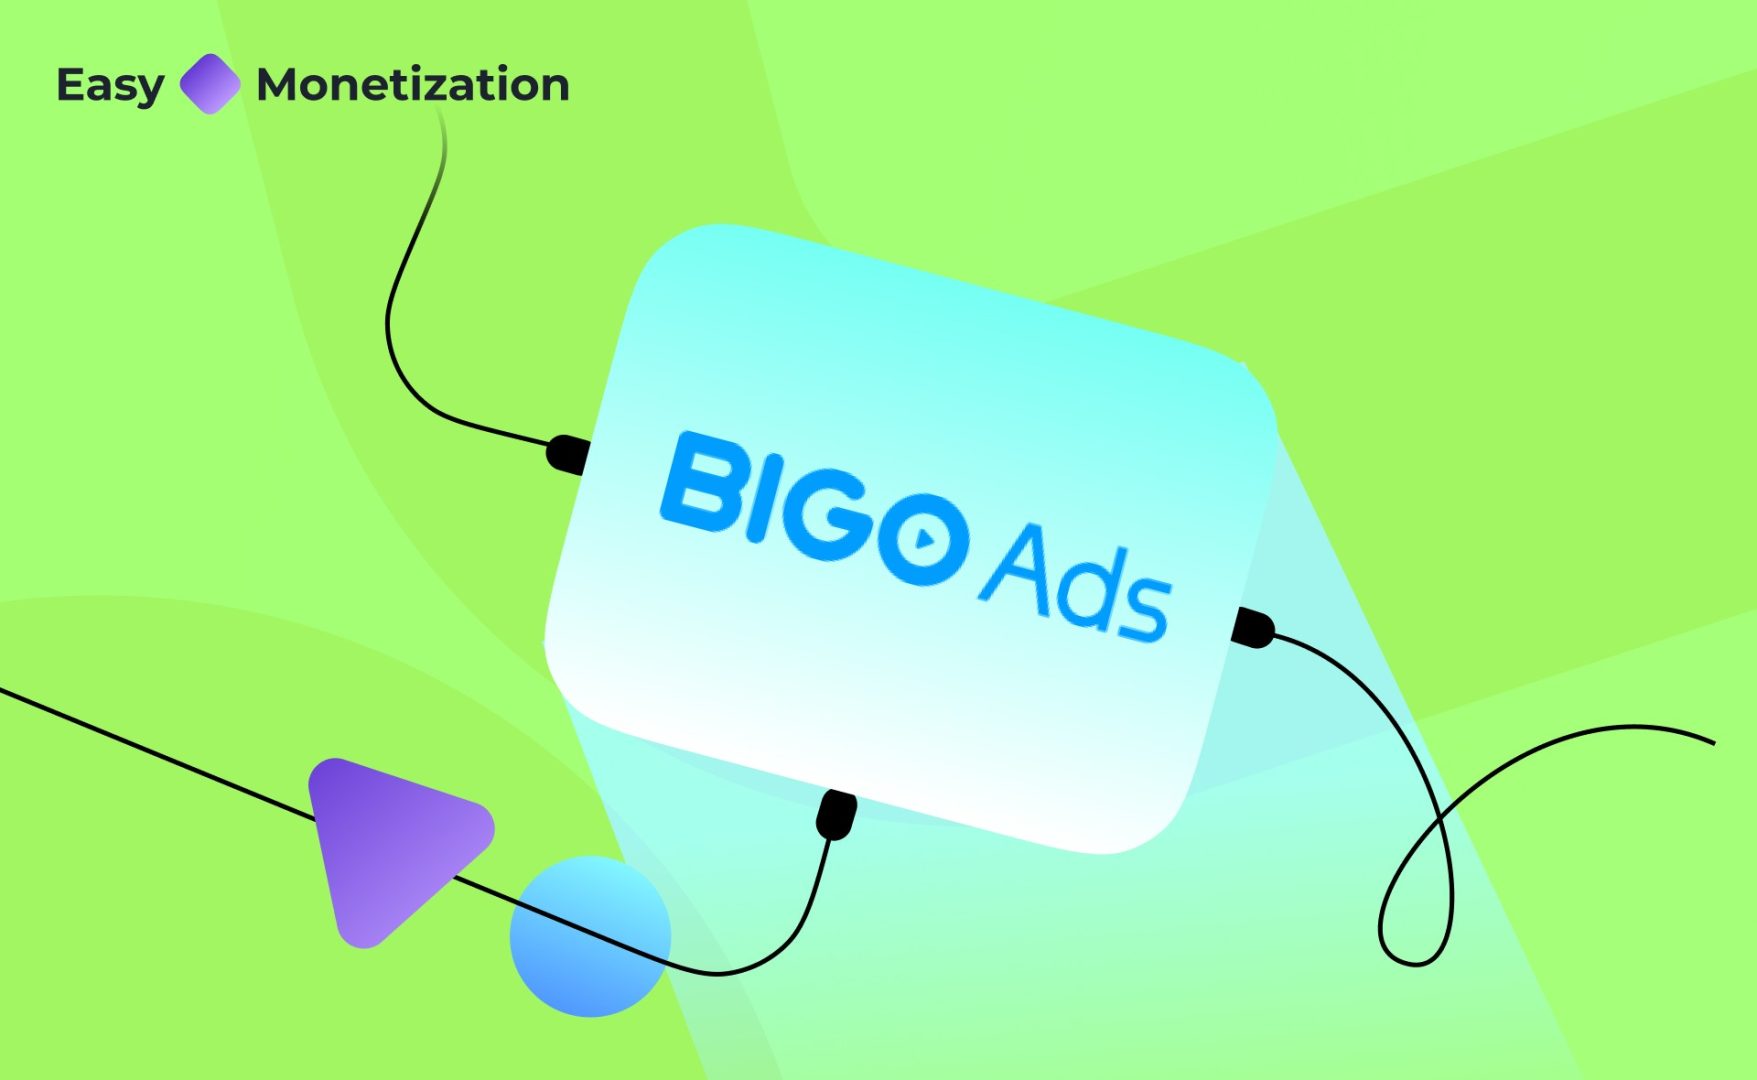 BIGO Ads, Yandex Ads Monetizasyon Servislerine Dahil Olan 13. Ağ Oldu